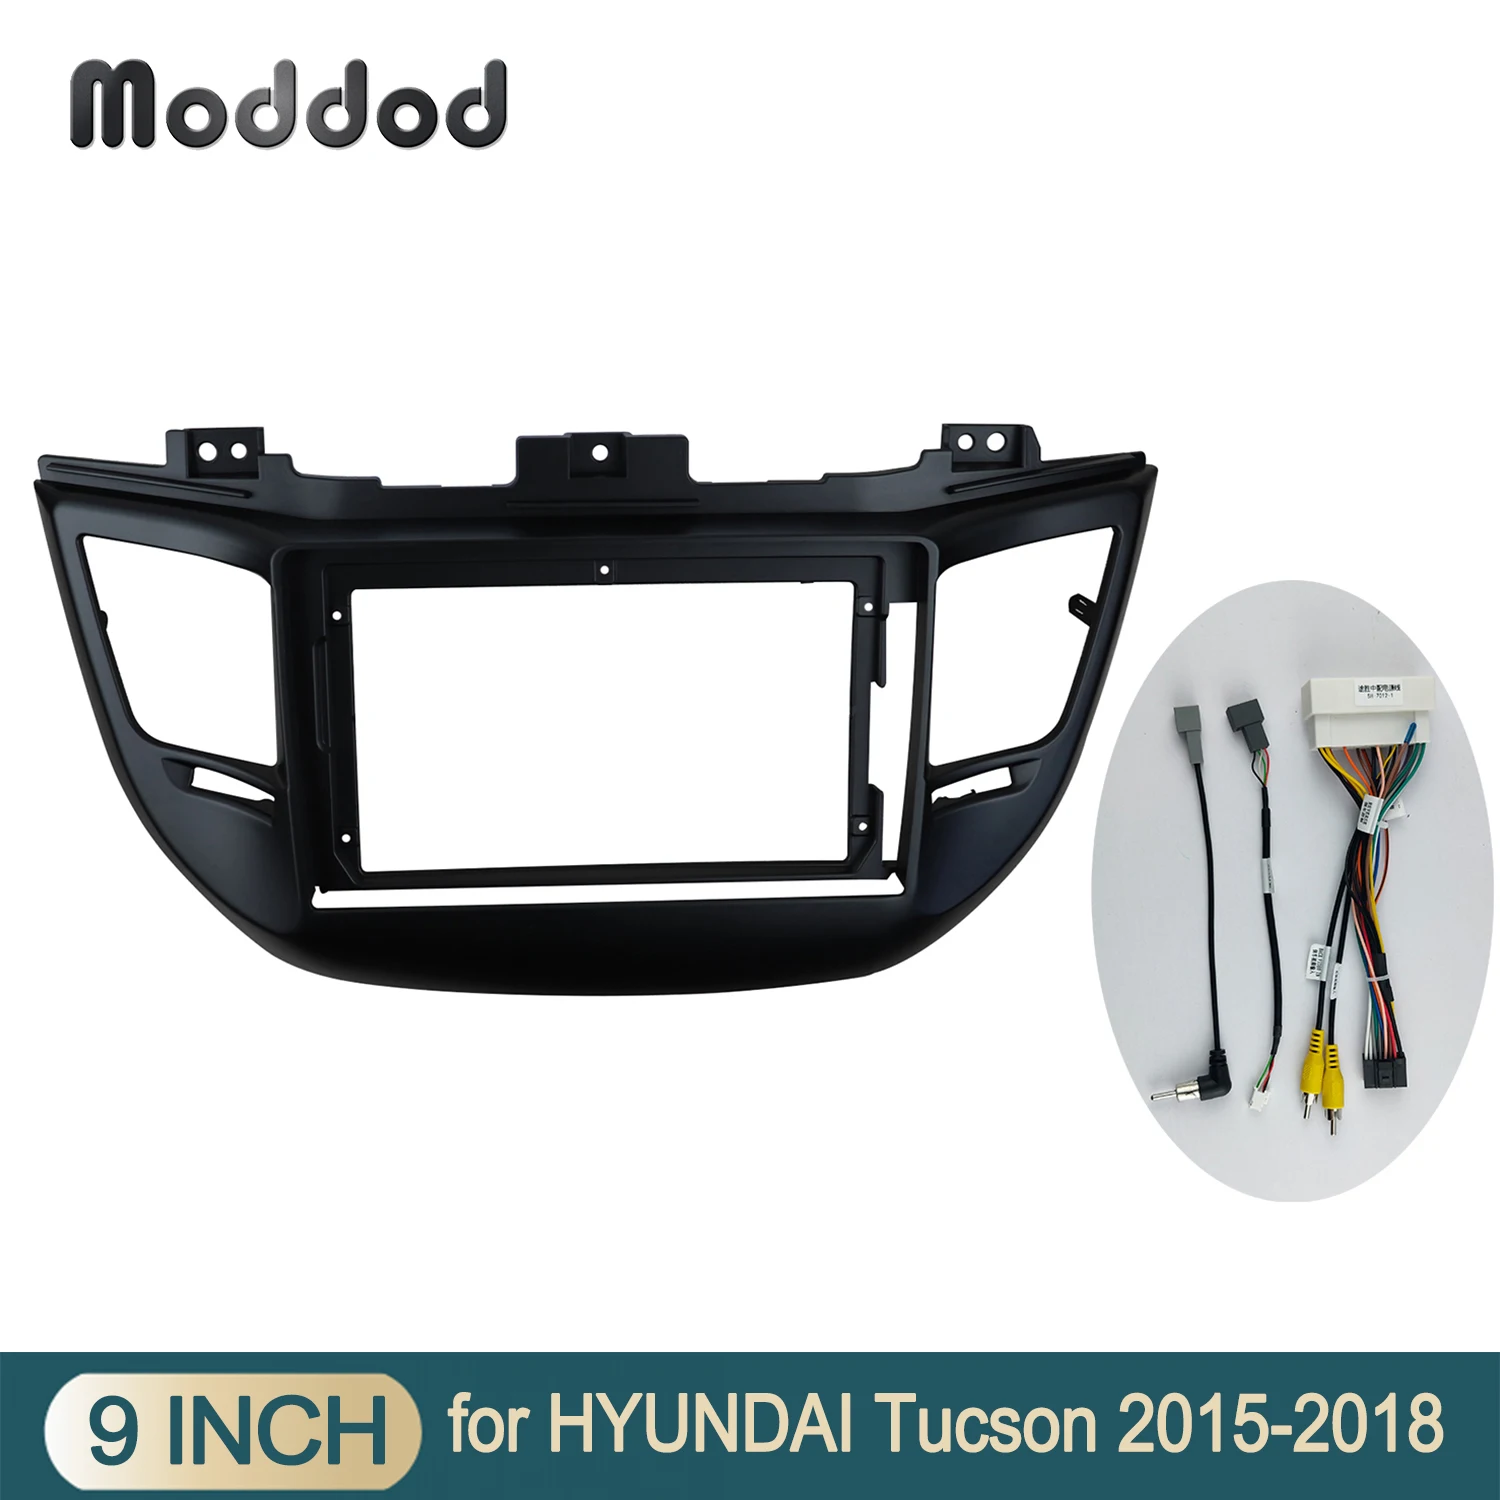 

Приборная панель для автомобильного радиоприемника, 9 дюймов, подходит для HYUNDAI TUCSON 2015-2018 LHD Dash Kit, установка экрана на приборную панель, установка рамы для DVD